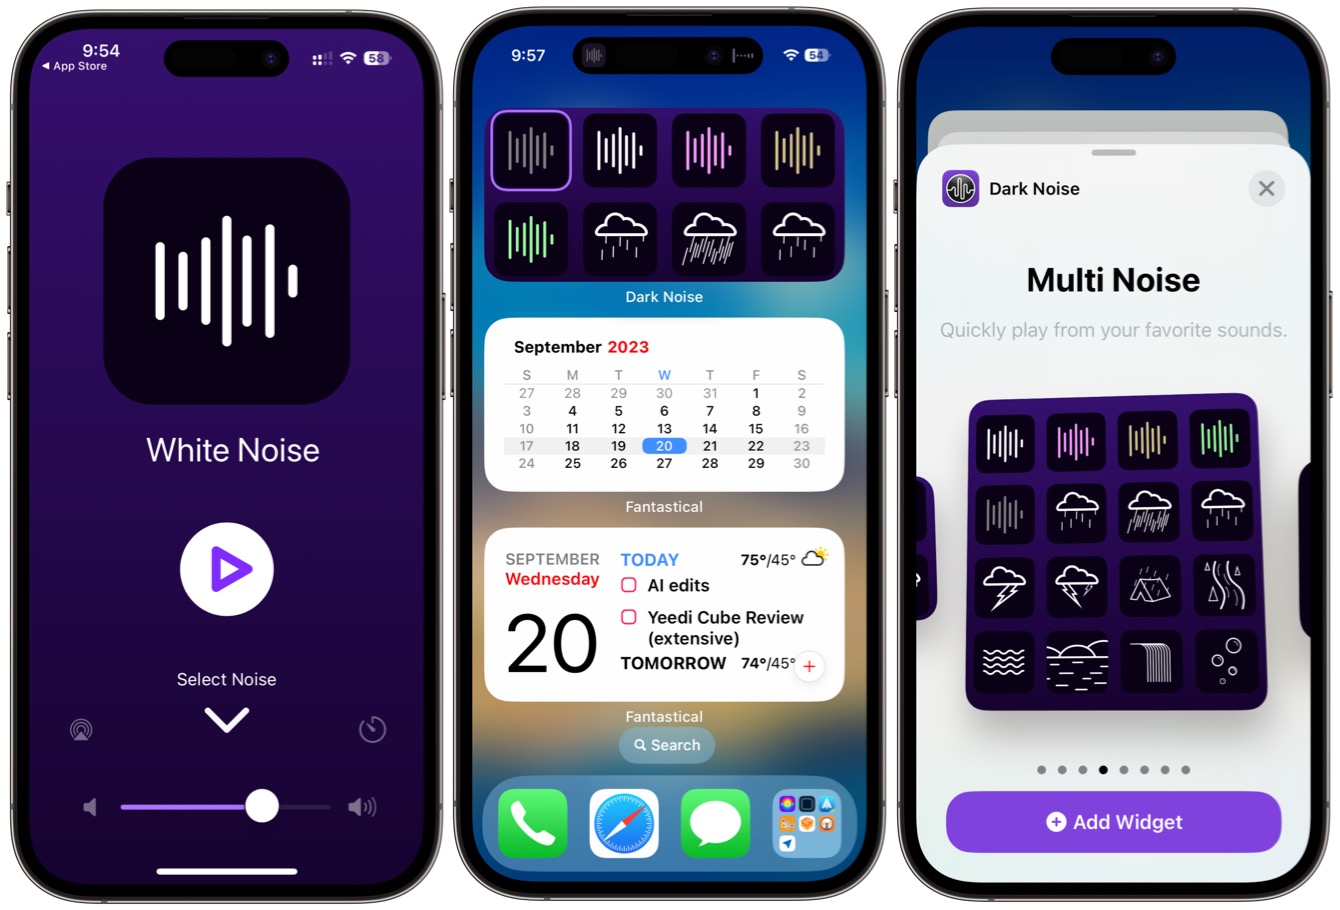 Widgets interactivos de Dark Noise en iPhone